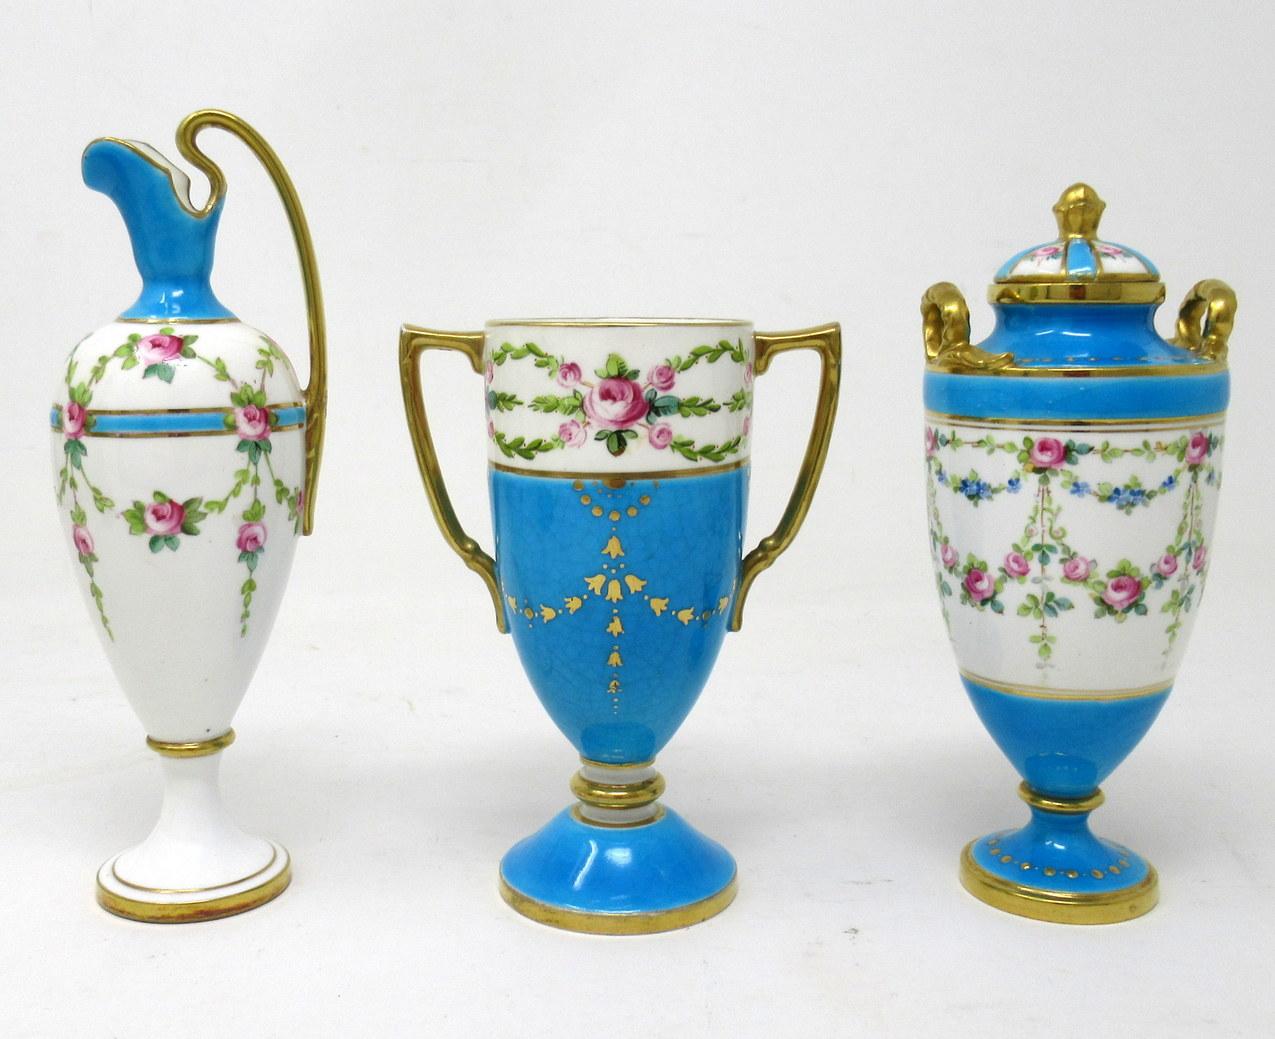 Superbe exemple d'une collection de trois objets décoratifs miniatures en porcelaine de Minton, une urne à deux anses avec couvercle, un vase à deux anses et une aiguière élancée, tous de qualité exceptionnelle. 

Chacune est décorée de roses